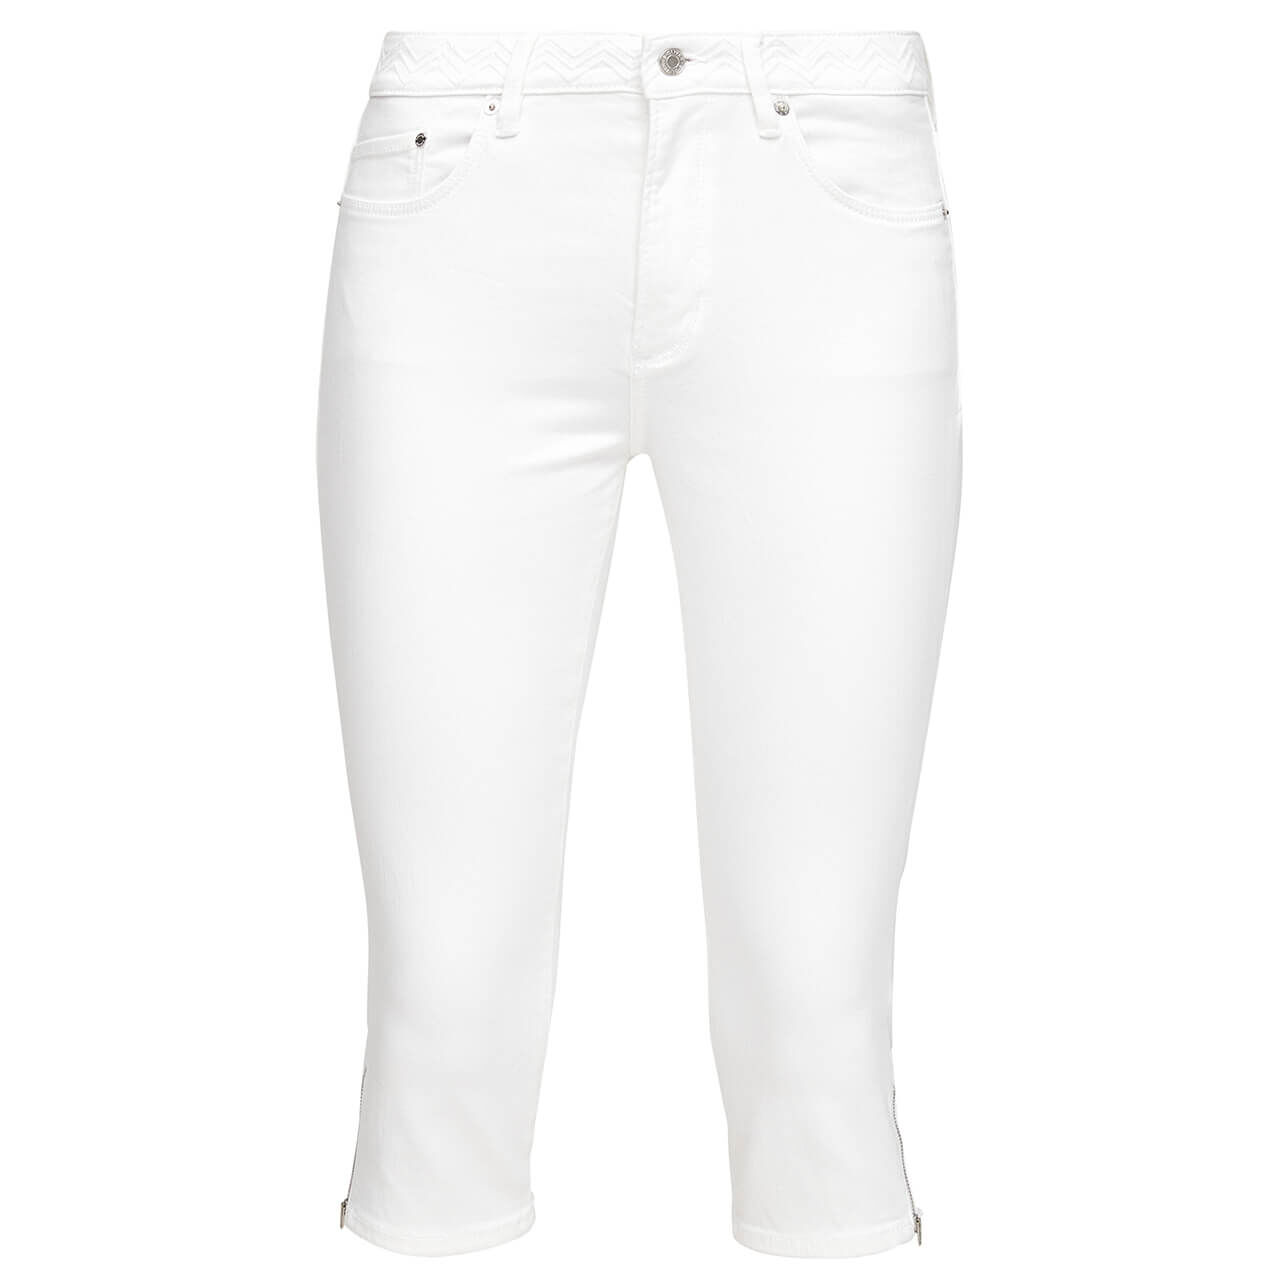 s.Oliver Betsy Jeans Capri für Damen in Weiß, FarbNr.: 01Z8